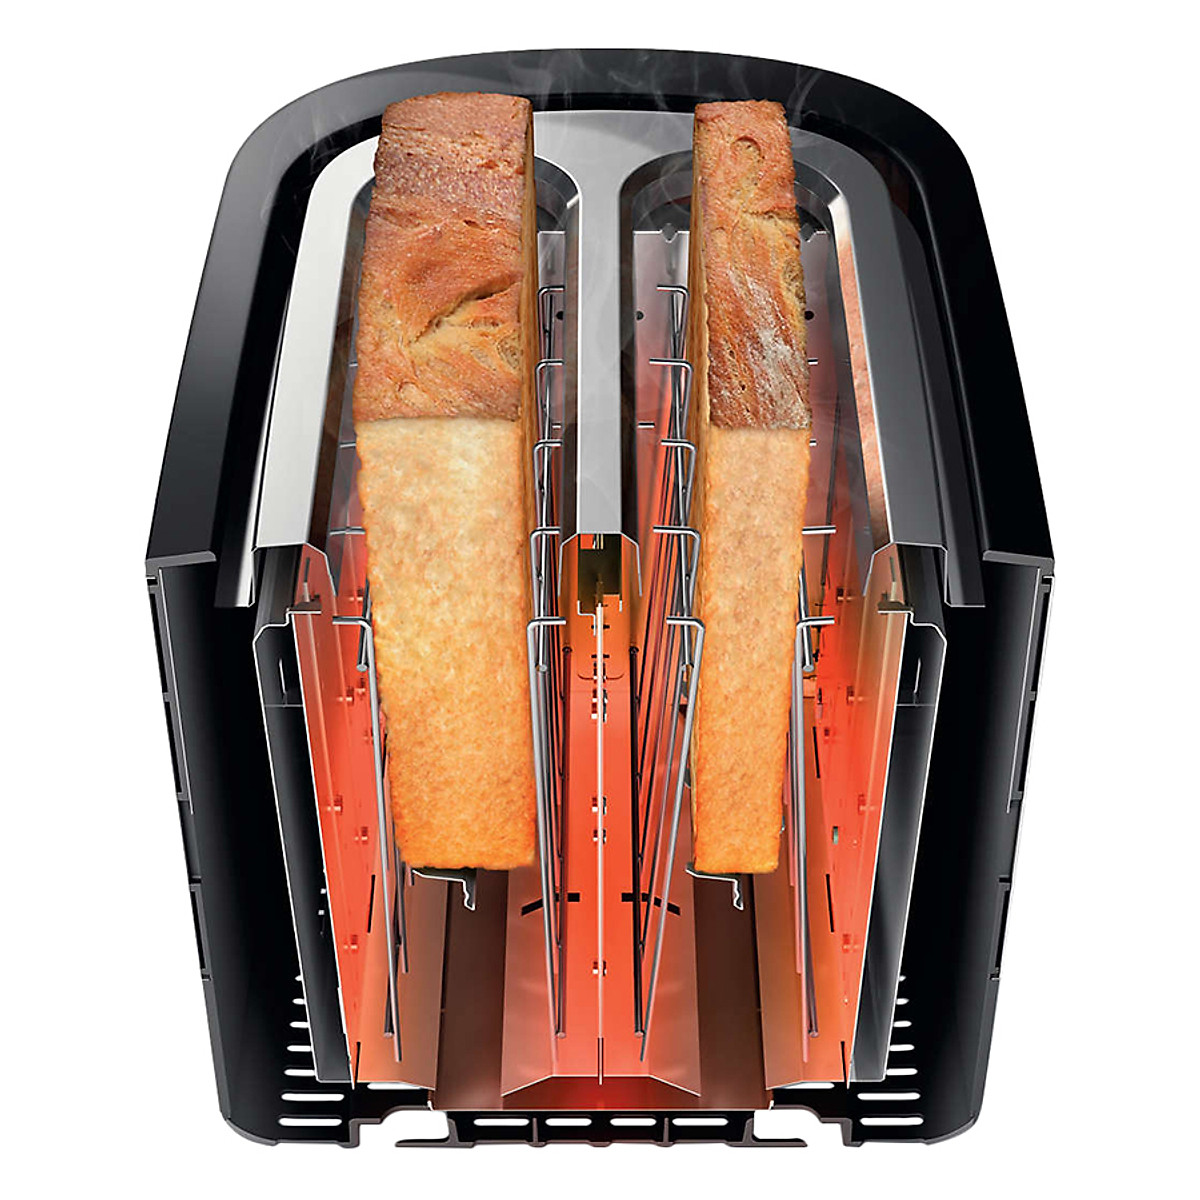 Máy Nướng Bánh Mì Philips HD2637 (950W)